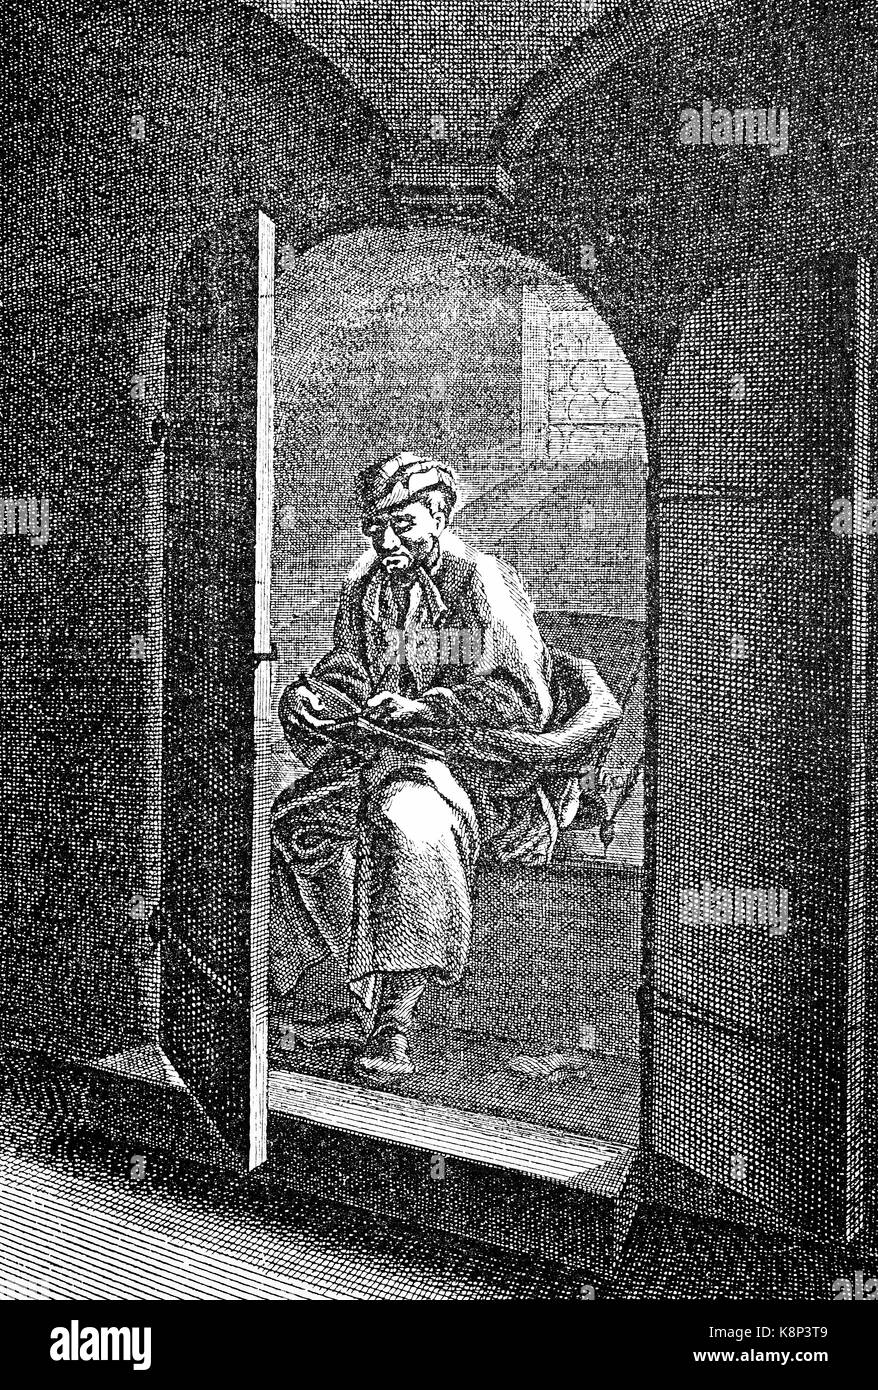 Student auf der Toilette sitzen, der Student mit dem Loco secreto, Toilette, 1750 digital verbesserte Reproduktion eines Holzschnitt, im 19. Jahrhundert veröffentlicht. Stockfoto